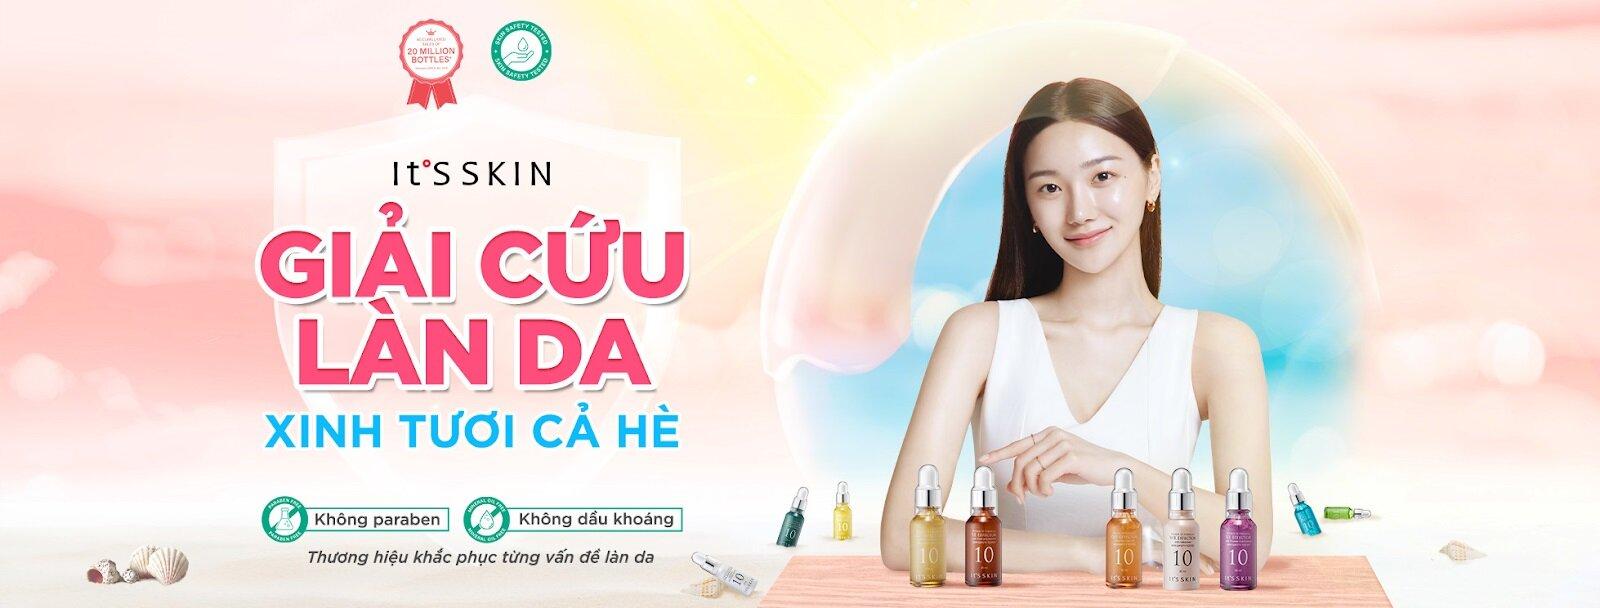 It's Skin - thương hiệu mỹ phẩm Hàn Quốc được yêu thích với nhiều sản phẩm nổi bật hiện nay (Ảnh: Internet)